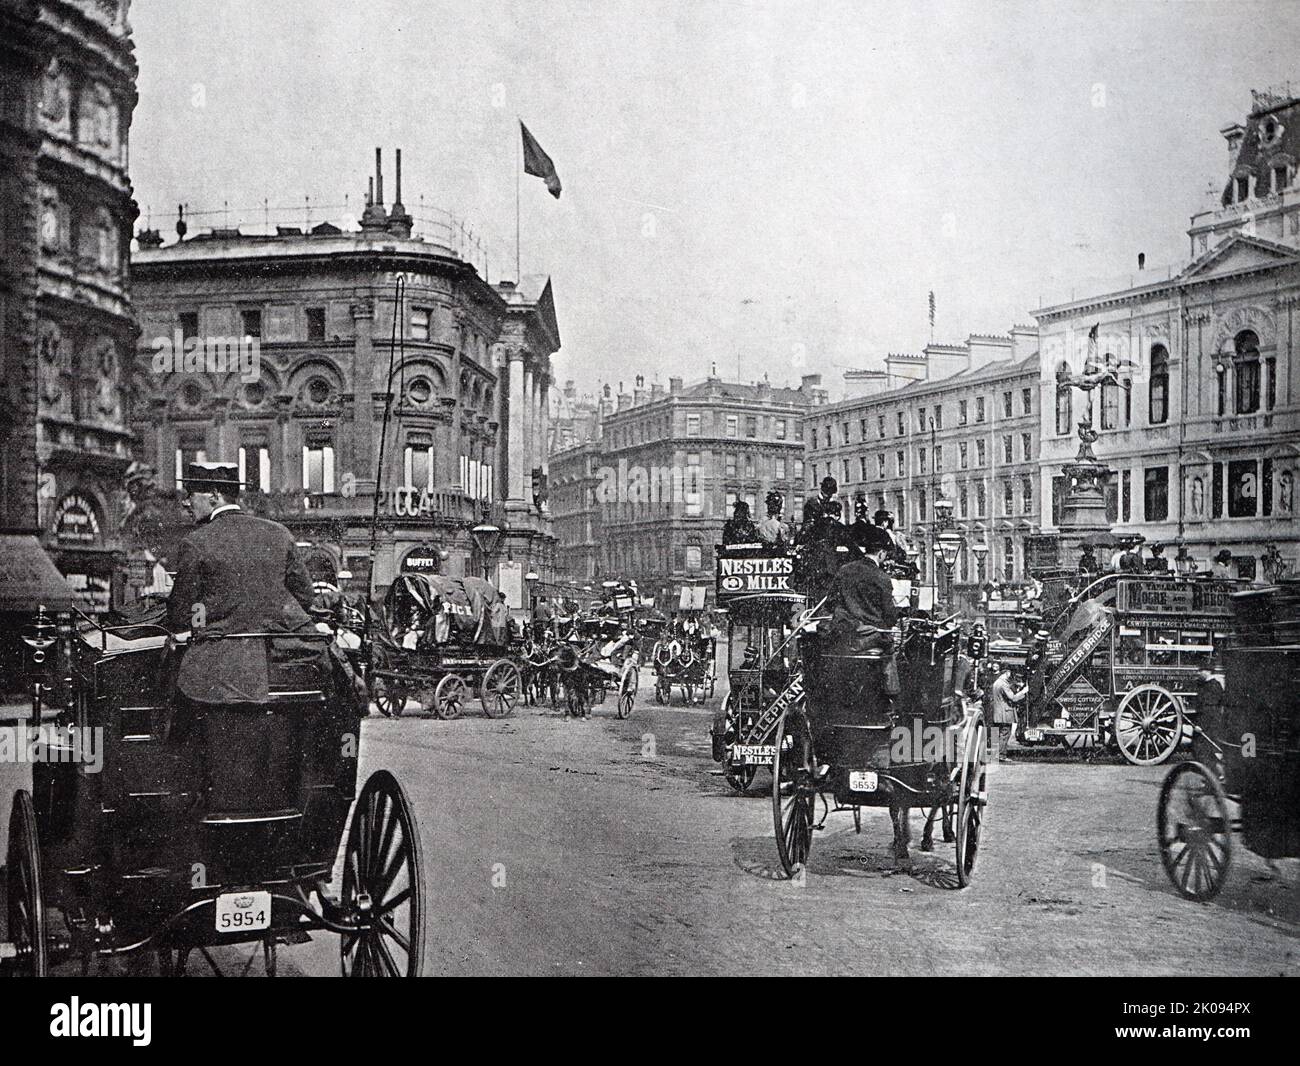 Der Piccadilly Circus ist ein Straßenknotenpunkt und öffentlicher Raum im Londoner West End in der City of Westminster. Es wurde 1819 erbaut, um die Regent Street mit Piccadilly zu verbinden. Stockfoto